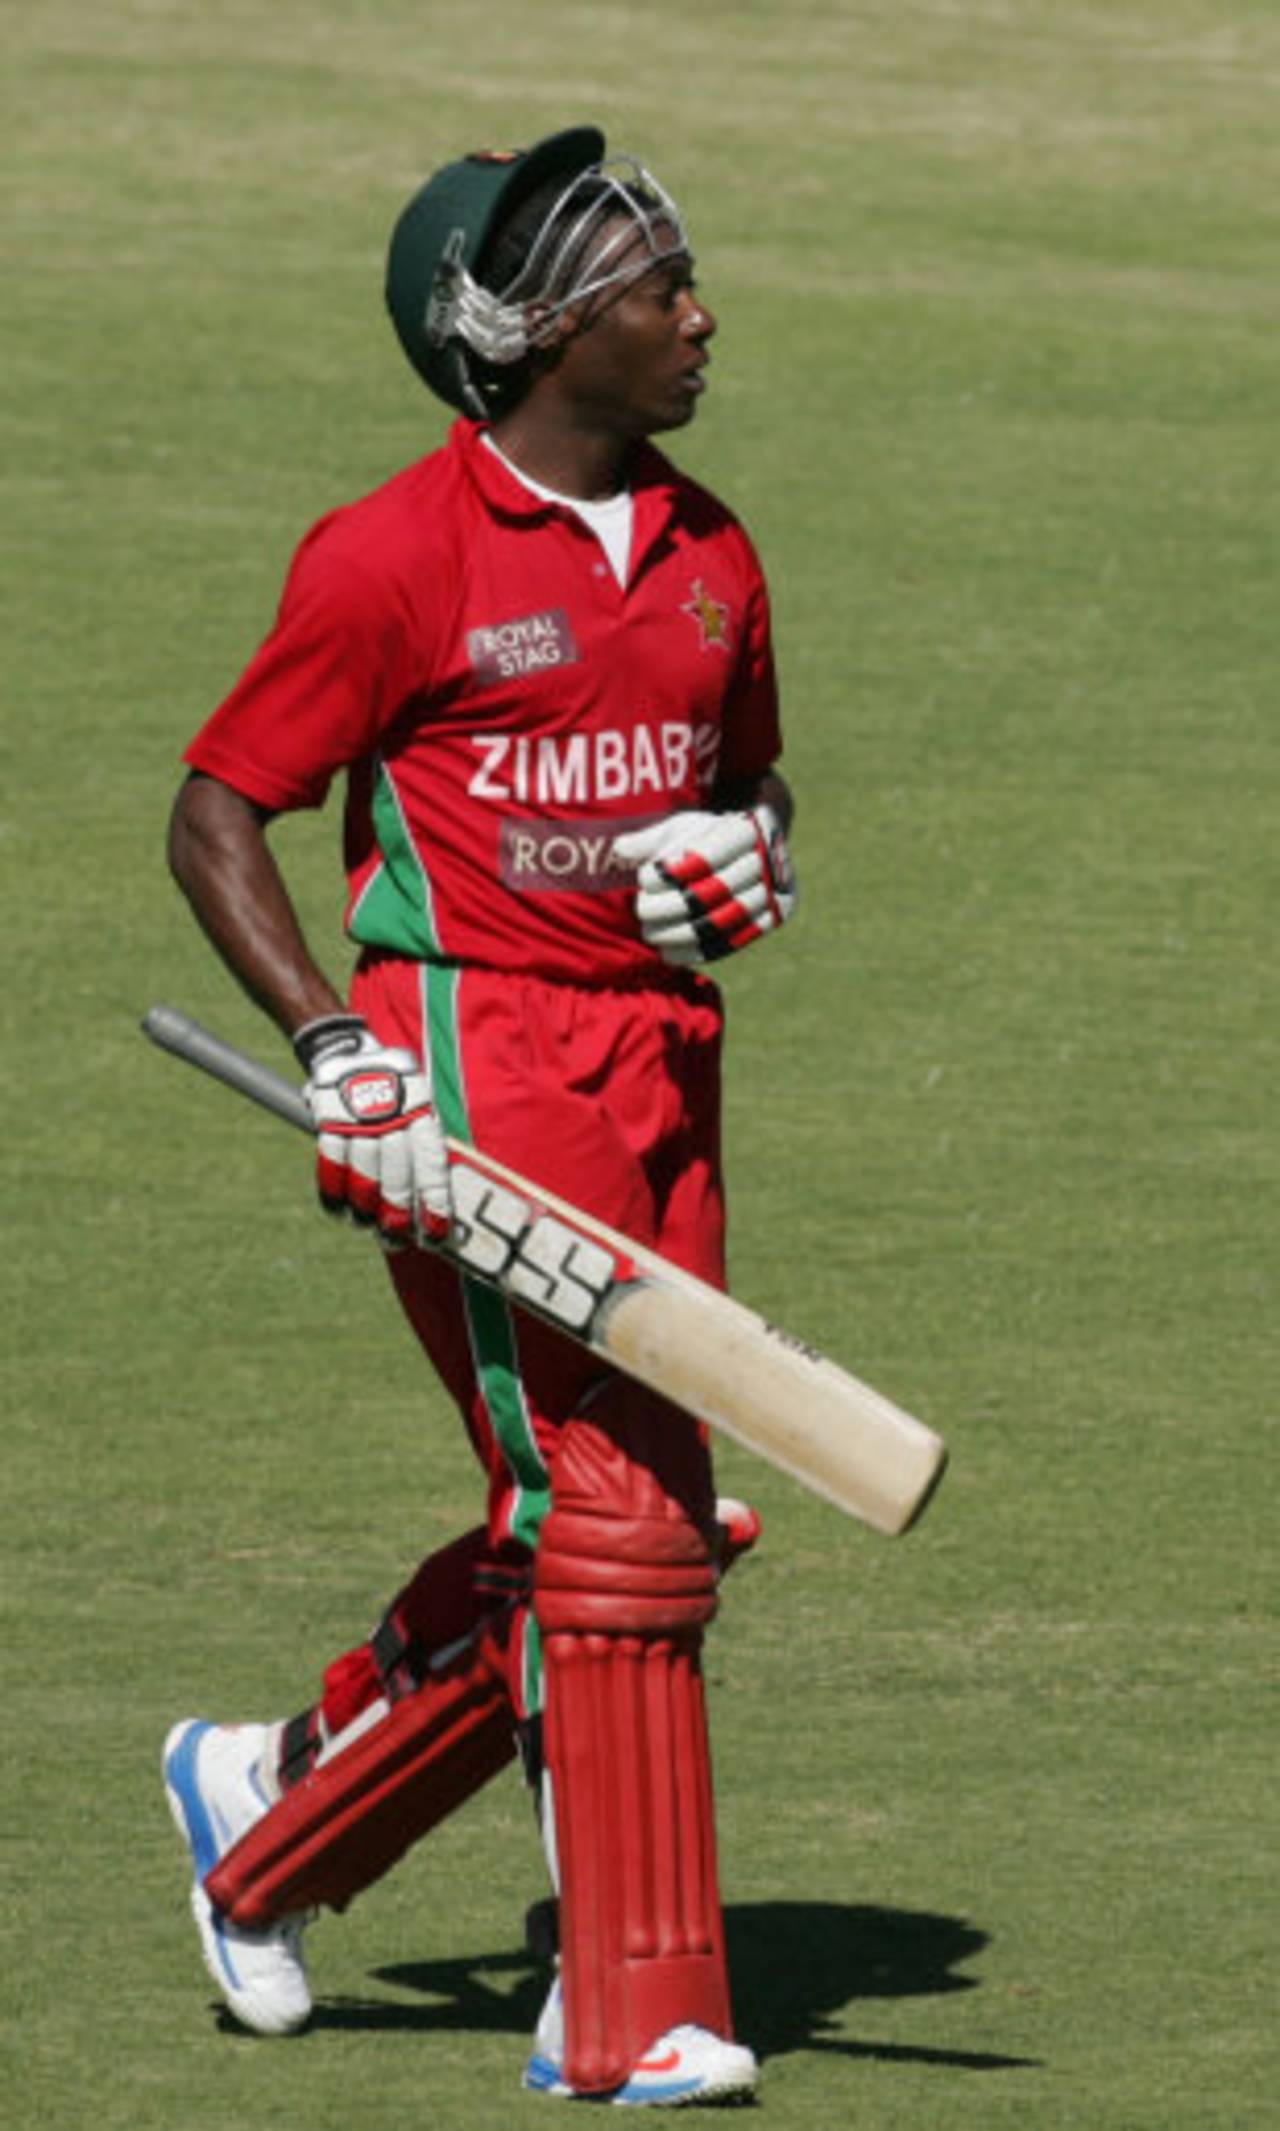 Vusi Sibanda departs for 34, ZImbabwe v India, 1st ODI, Harare, July 24, 2013